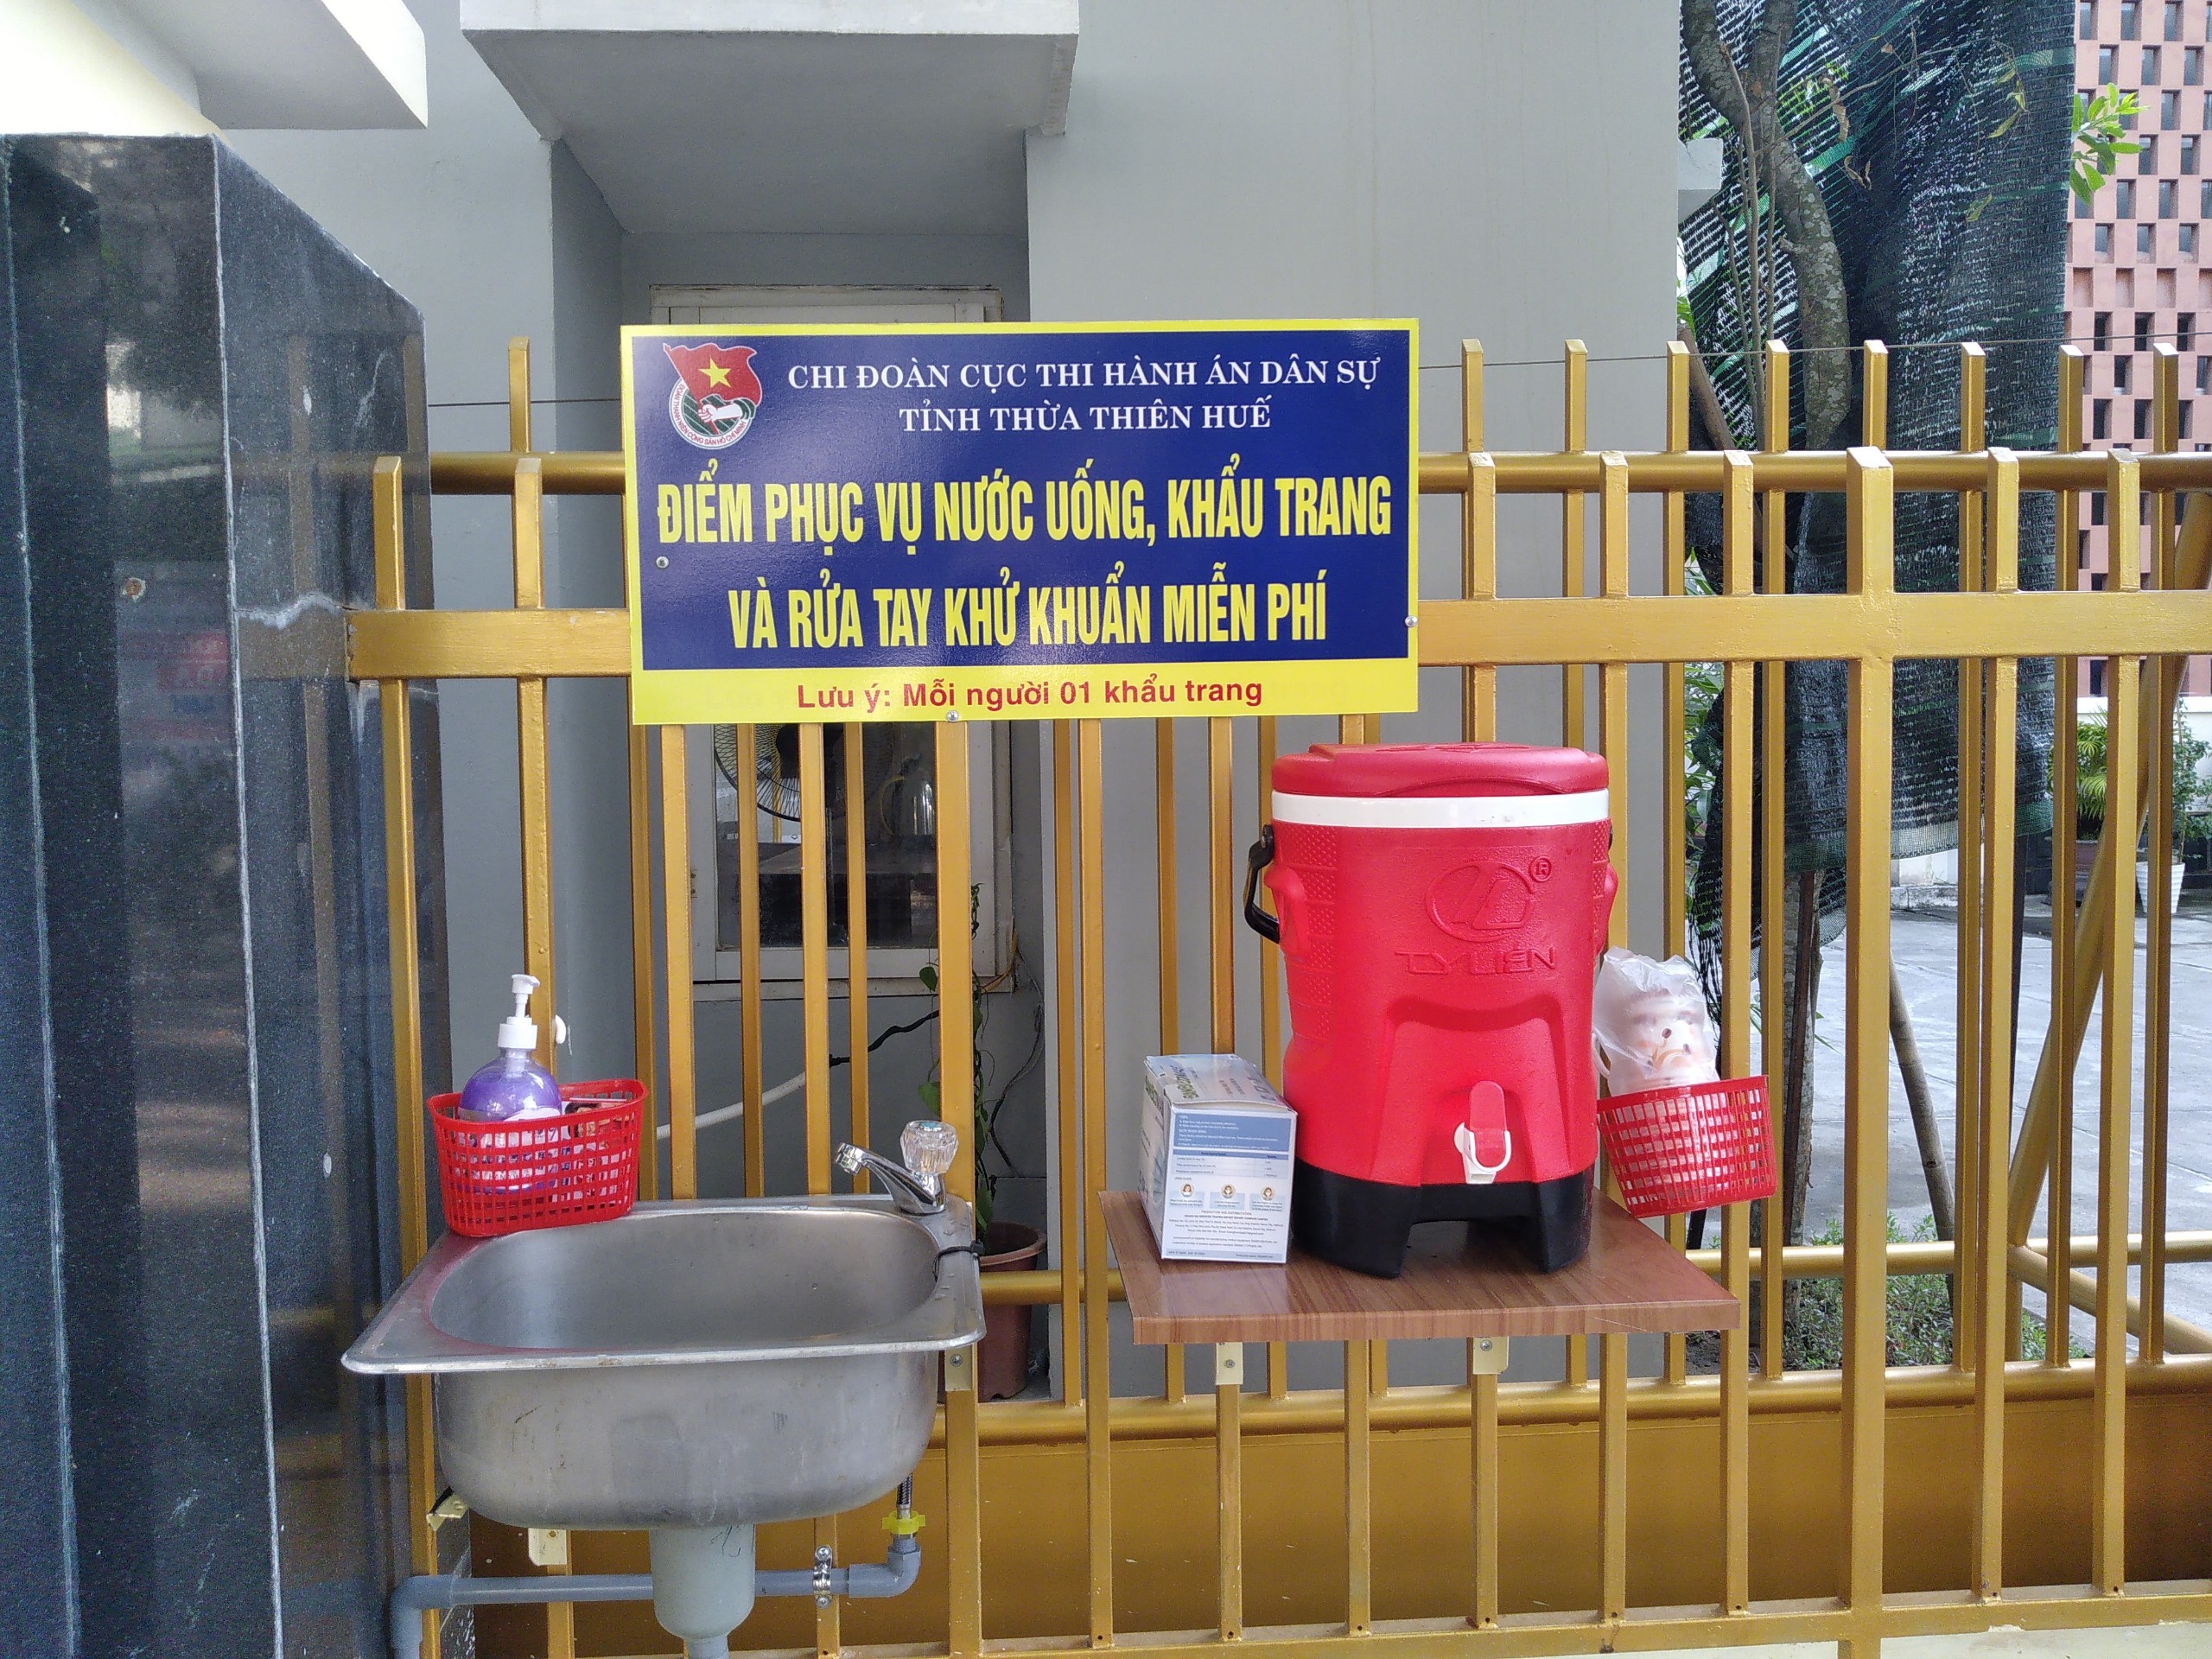 Chi Đoàn Thanh niên Cục THADS tỉnh Thừa Thiên Huế triển khai mô hình “Điểm phục vụ nước uống, khẩu trang và rửa tay khử khuẩn miễn phí”.